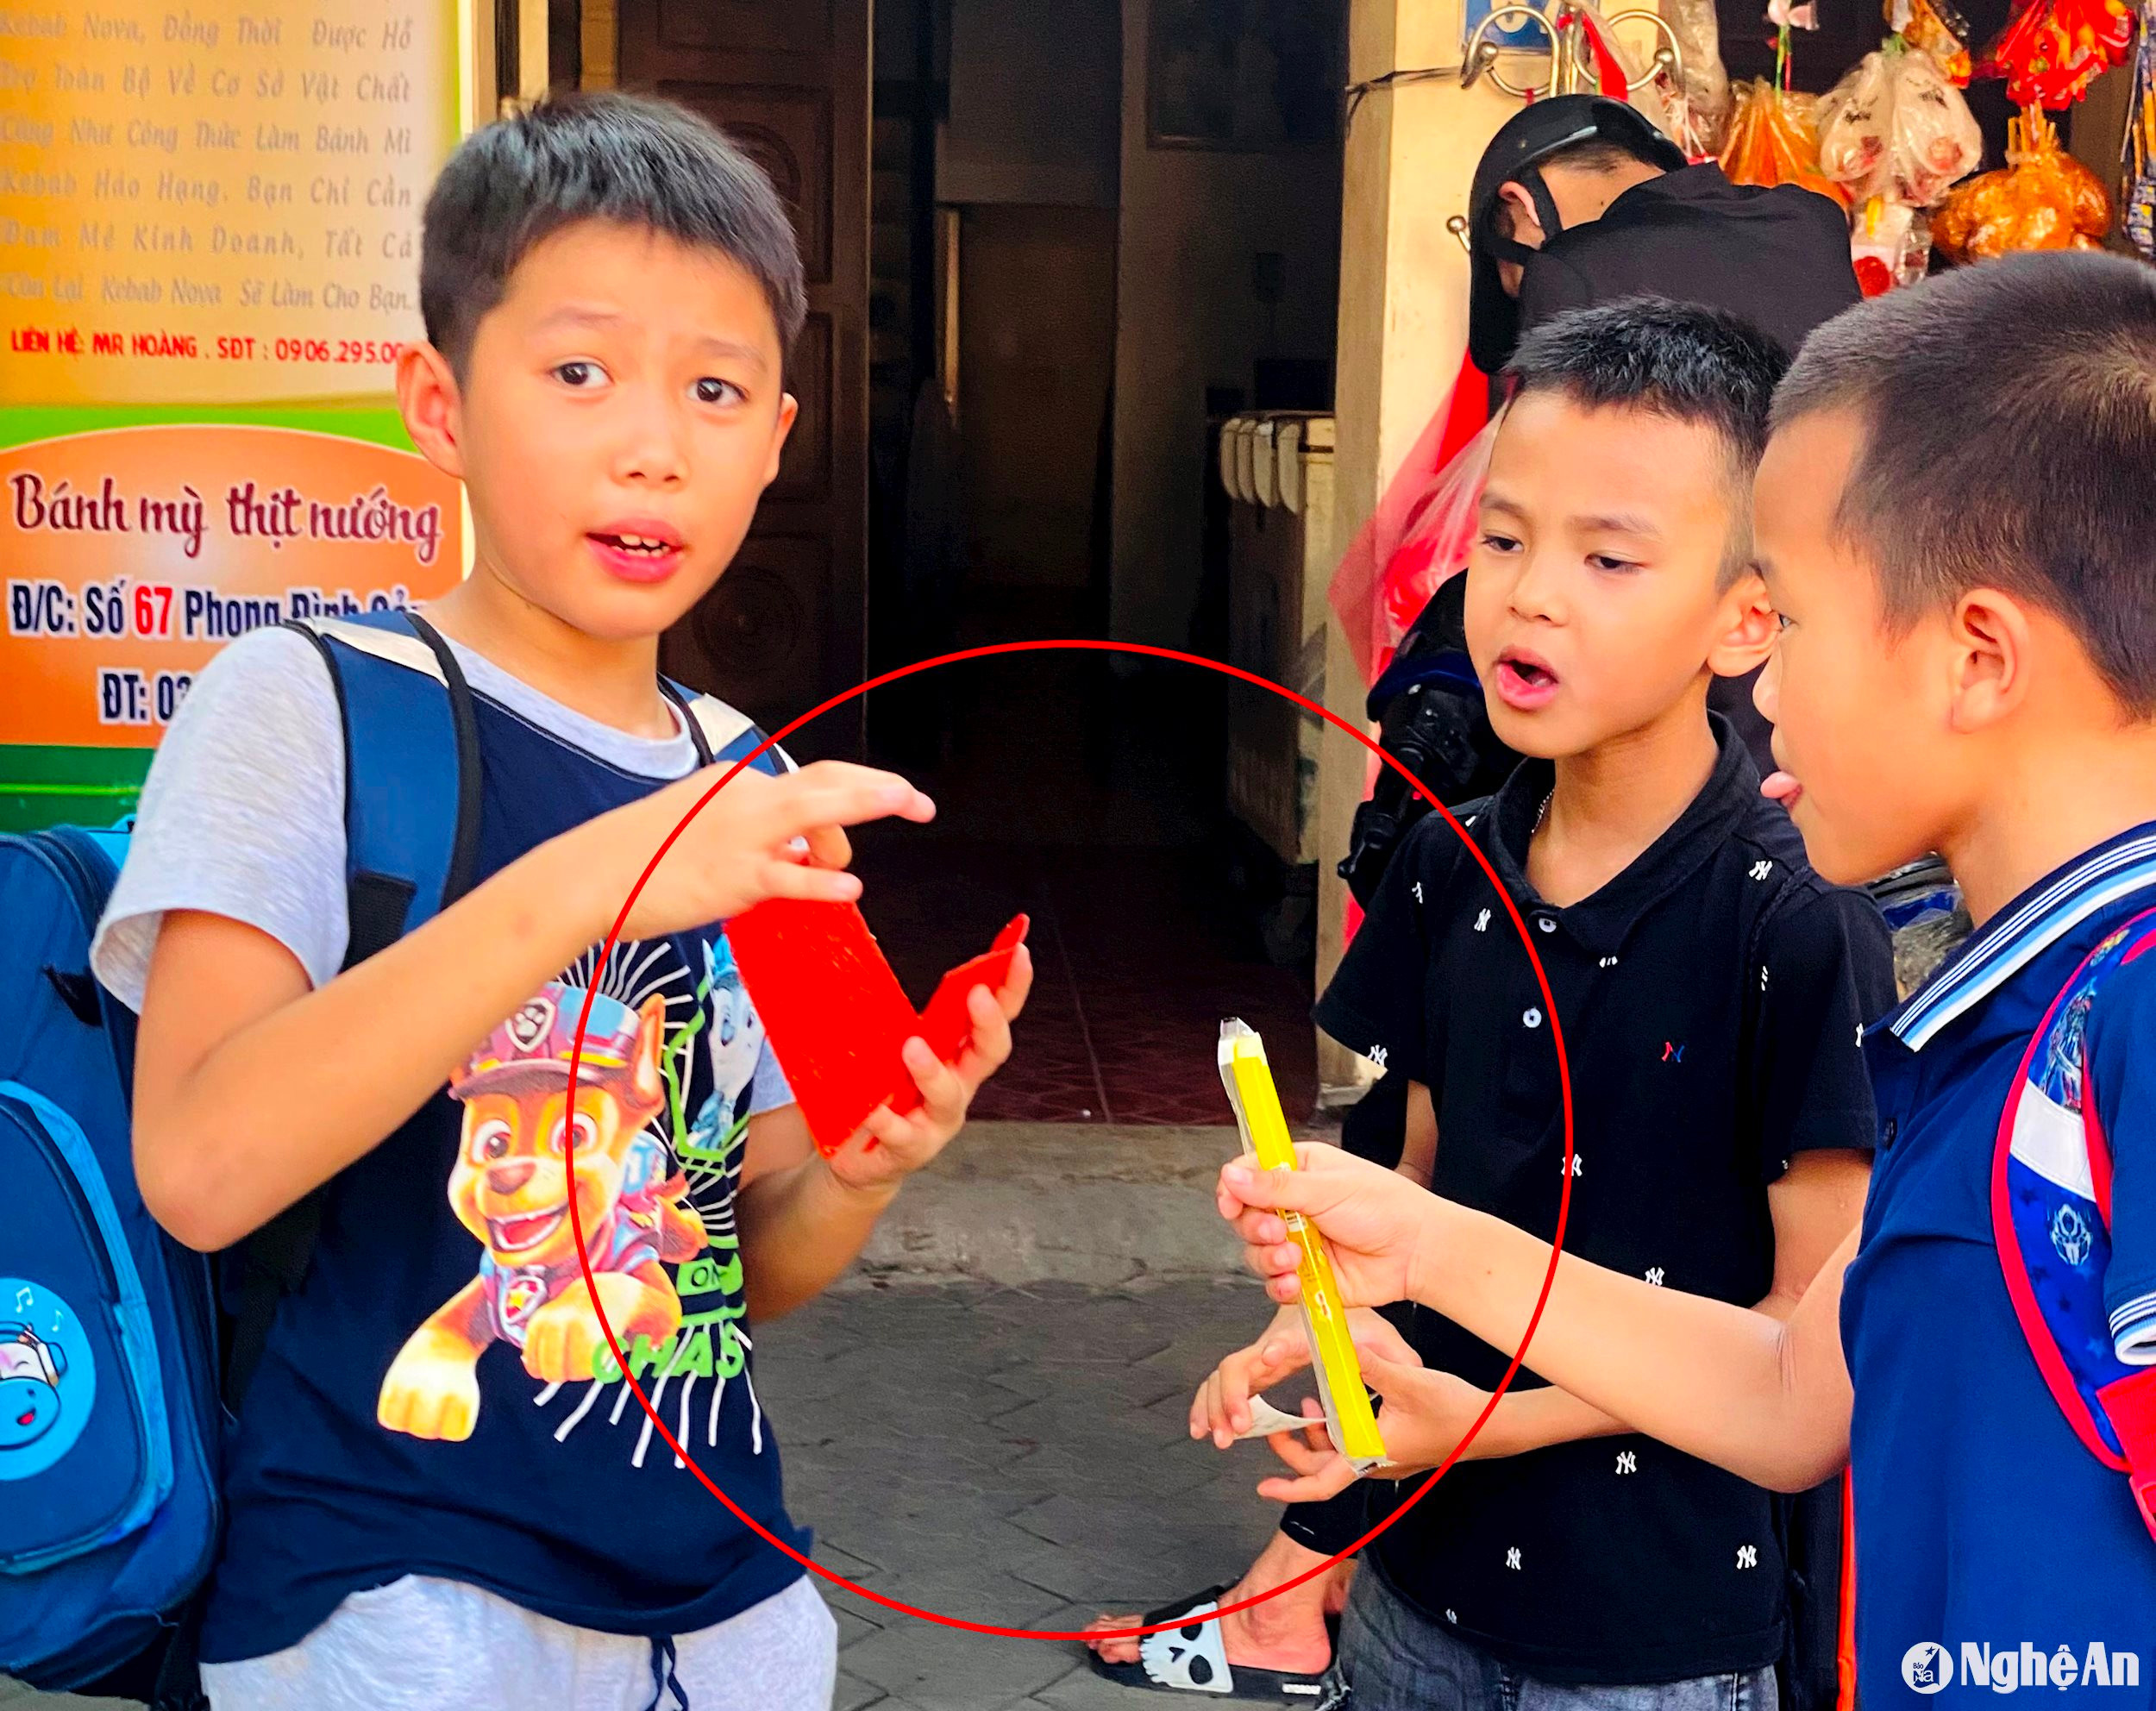 Hình ảnh các học sinh mua và ăn những thực phẩm không rõ nguồn gốc trước cổng trường diễn ra phổ biến. Ảnh chụp tại trước cổng trường Tiểu học Bến Thuỷ, TP.Vinh ảnh QA